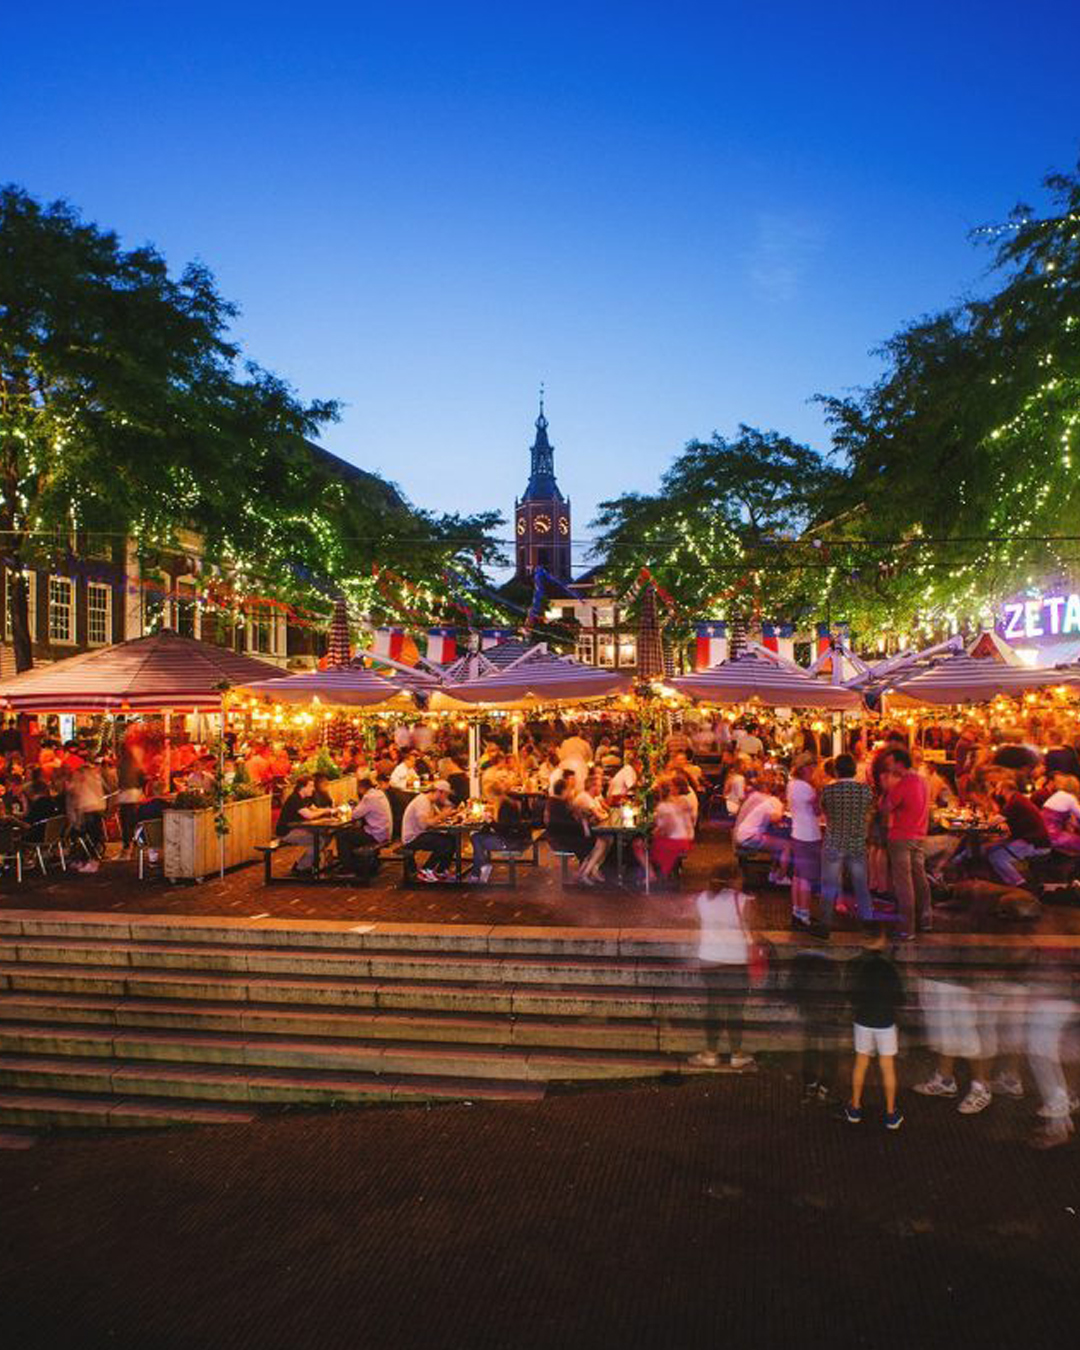 Enten Interactie Christchurch De Grote Markt | Den-Haag | Het Gezelligste Plein van Nederland!